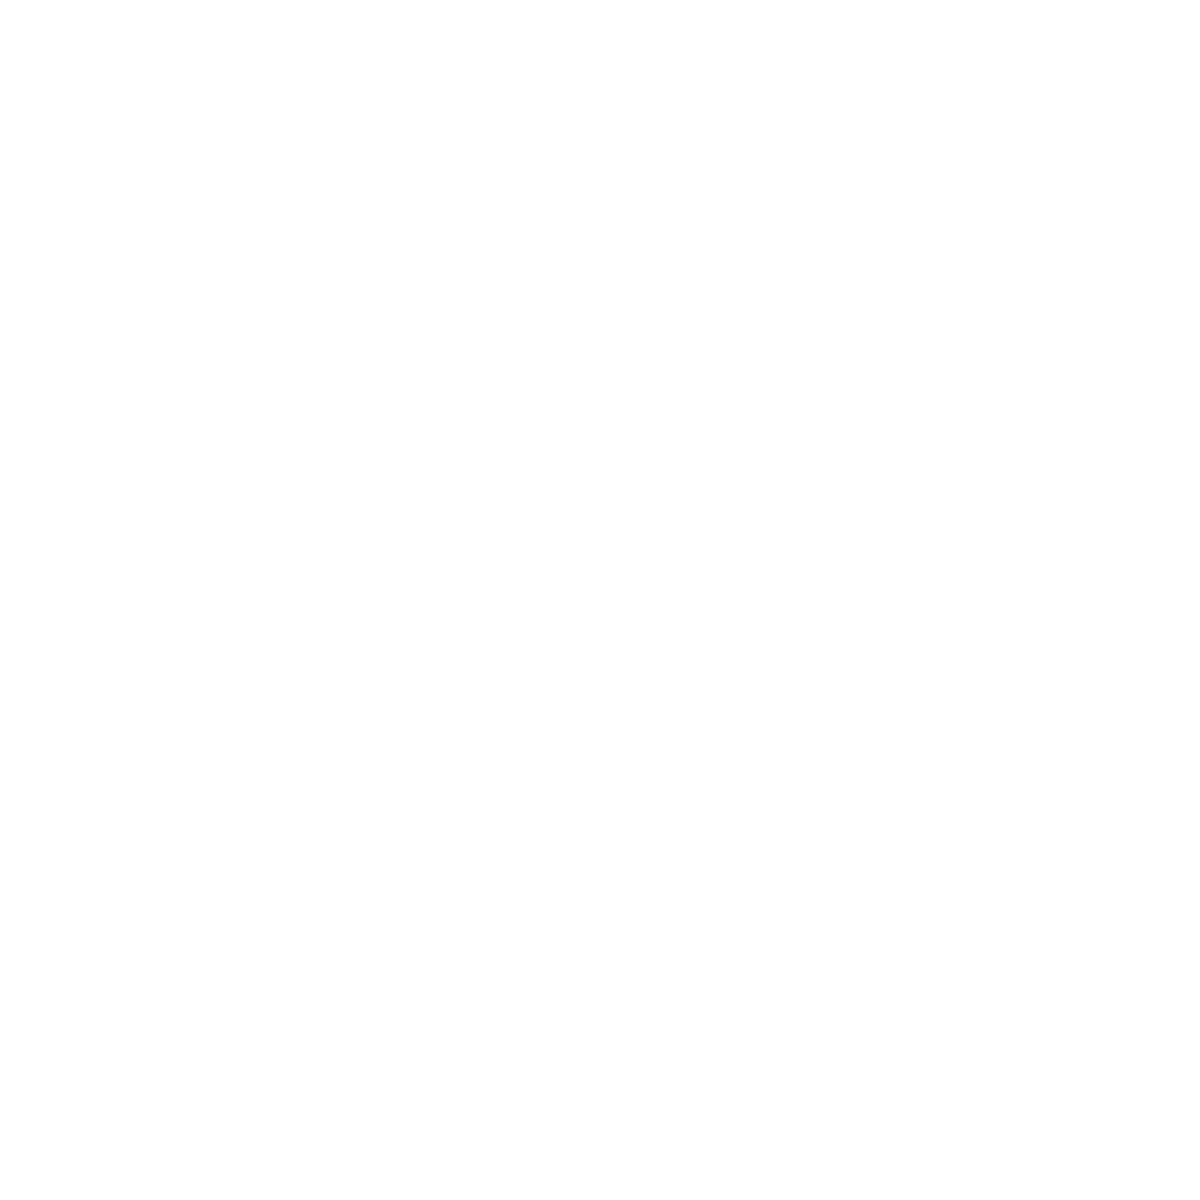 Oficina de Visitantes y Convenciones de Guadalajara, A.C.